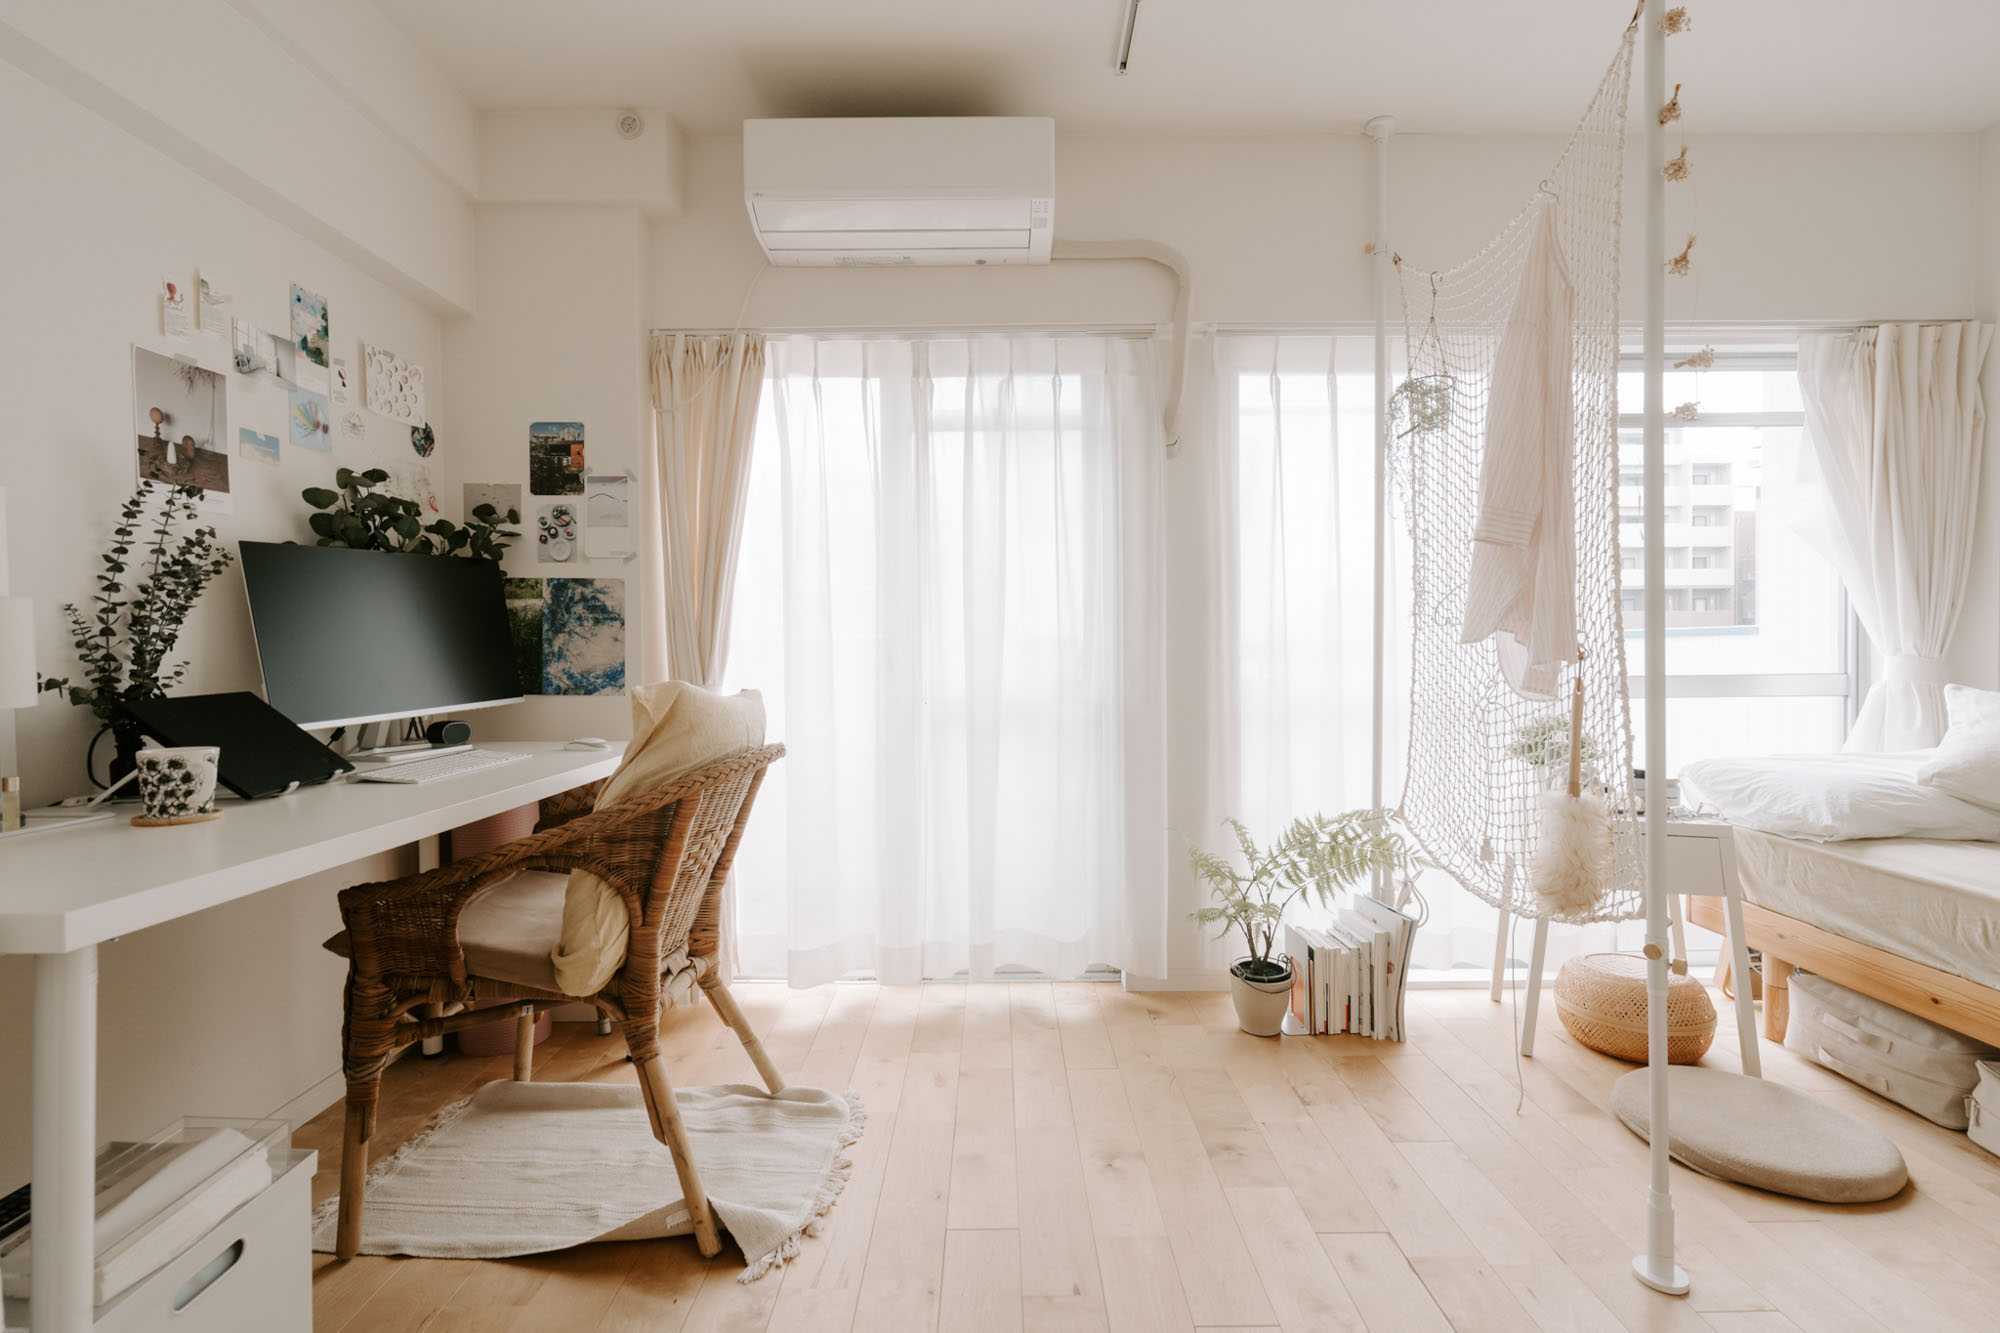 日当たりの良さが魅力 窓が多い部屋の家具レイアウト実例まとめ Goodroom Journal